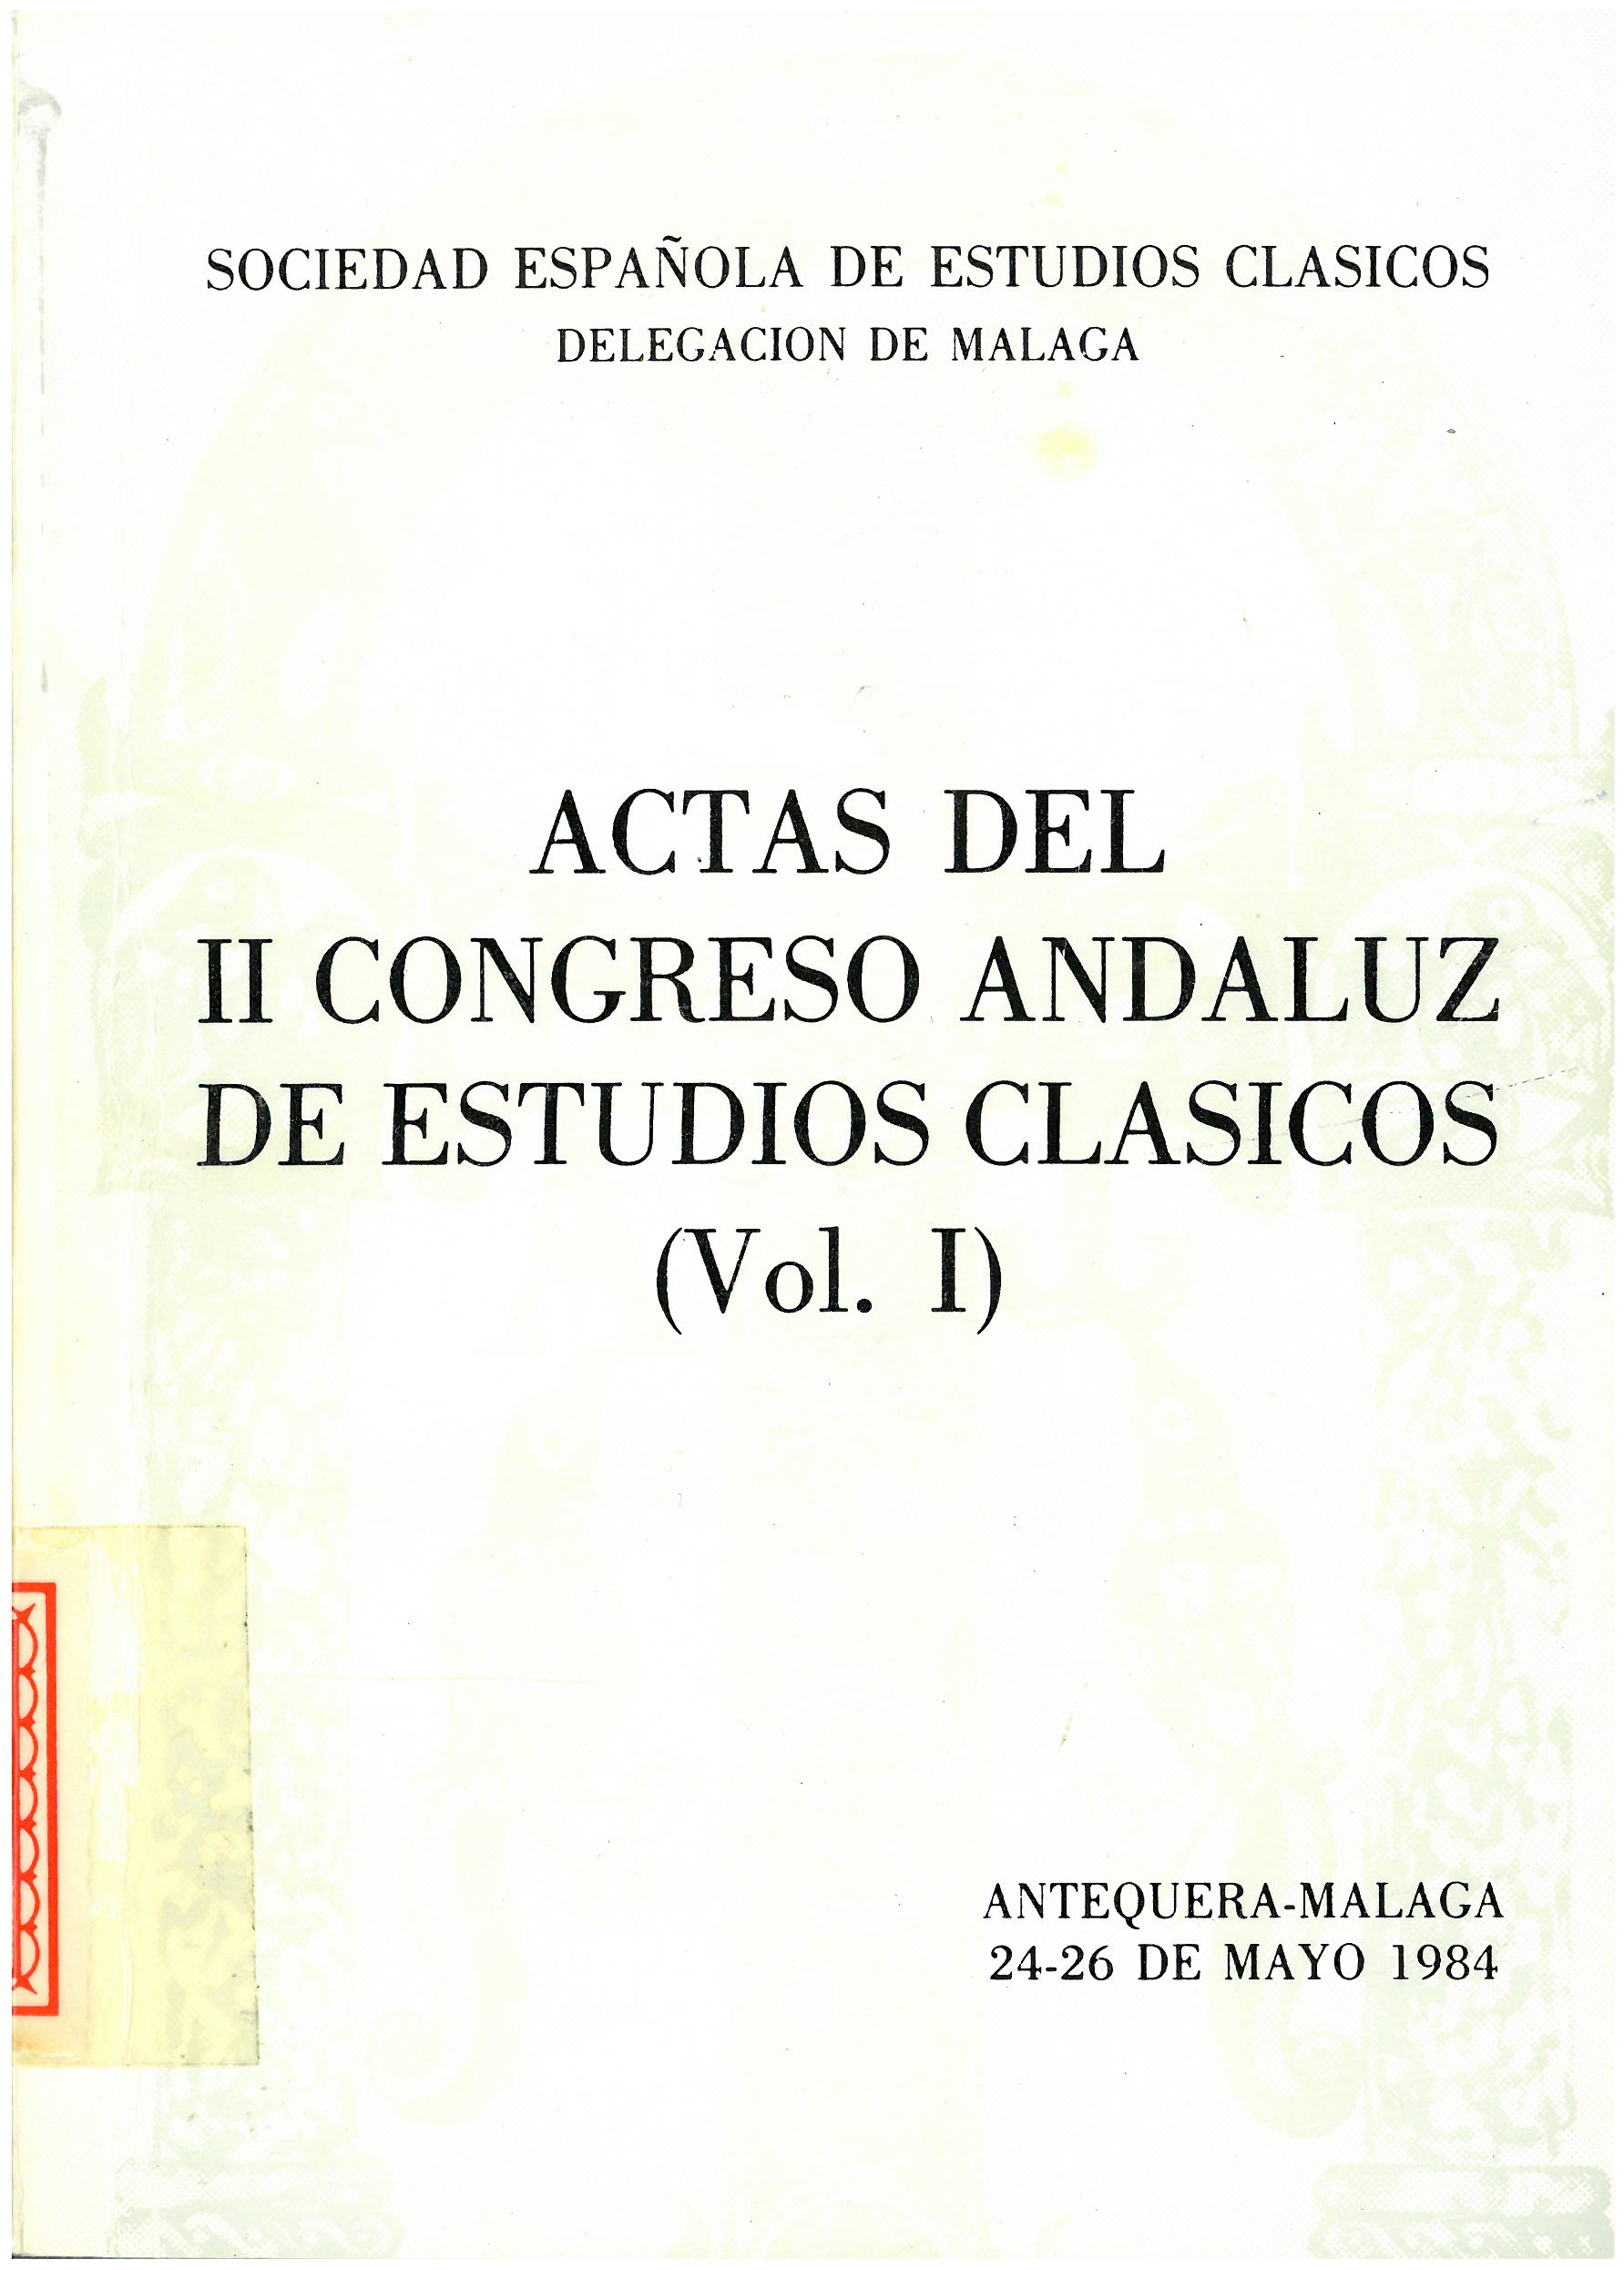 Imagen de portada del libro Actas del II Congreso Andaluz de Estudios Clásicos